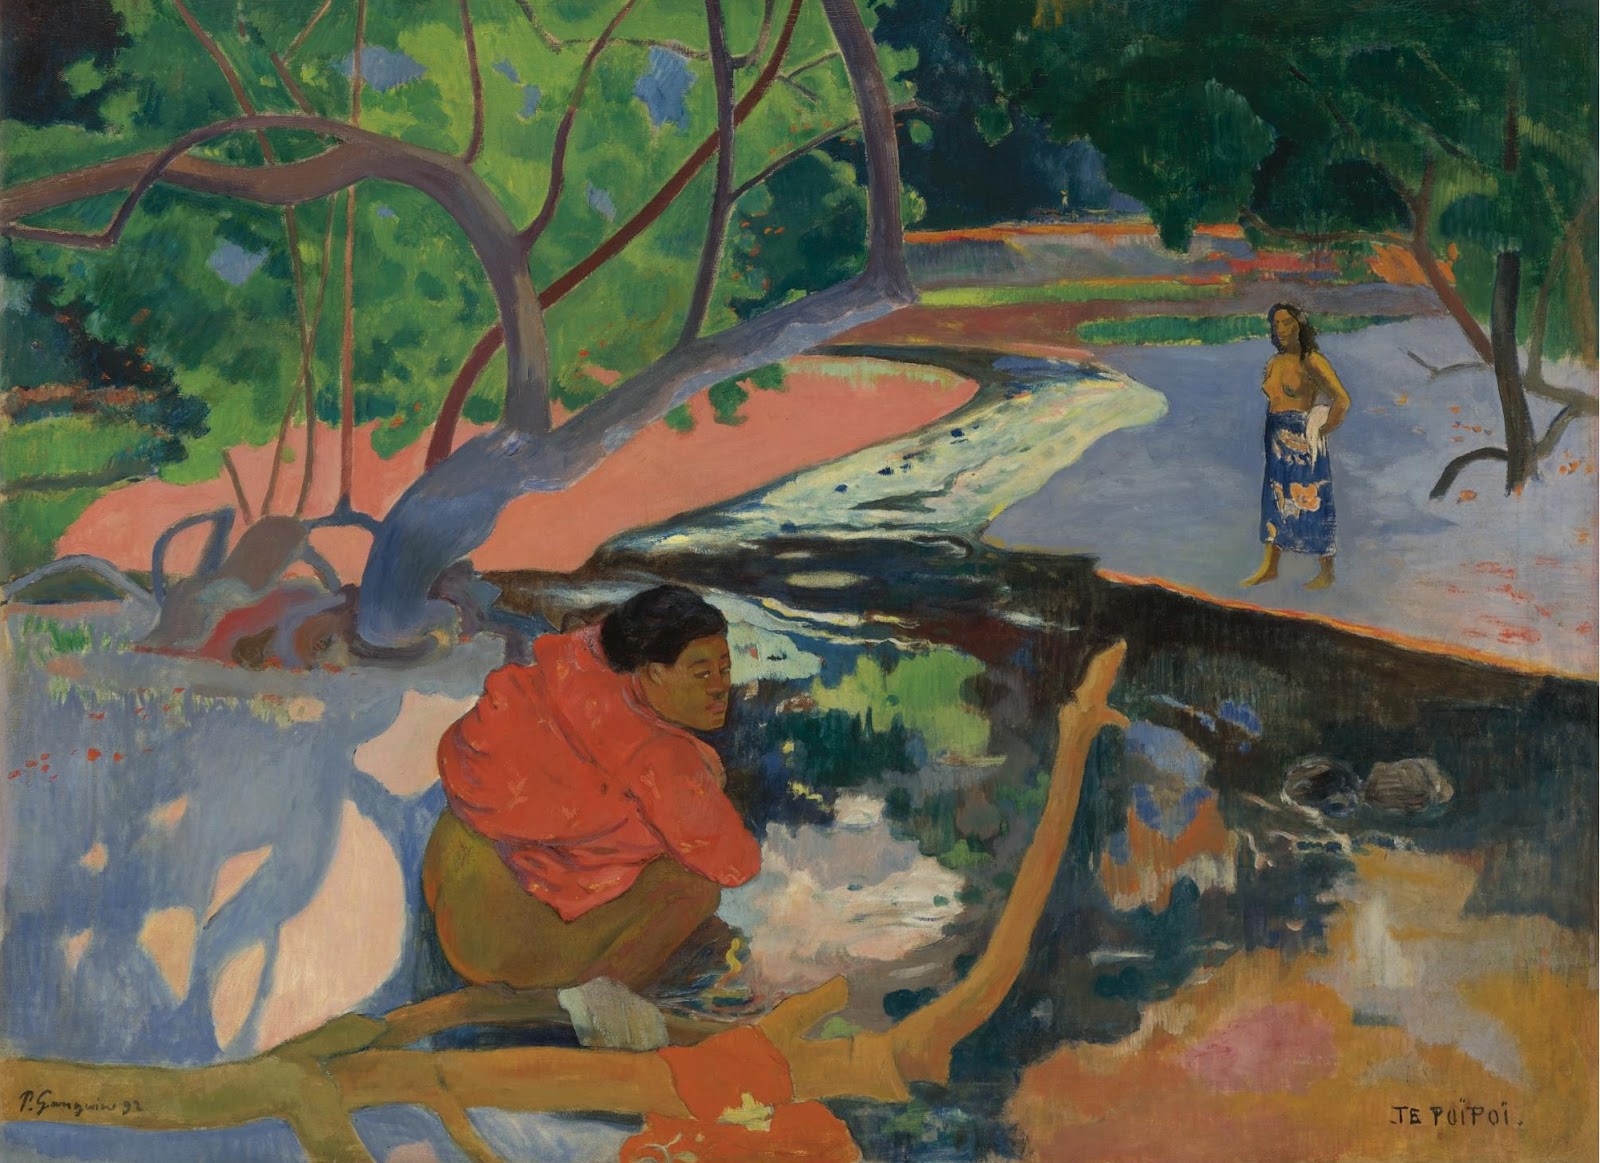 Paul+Gauguin-1848-1903 (395).jpg